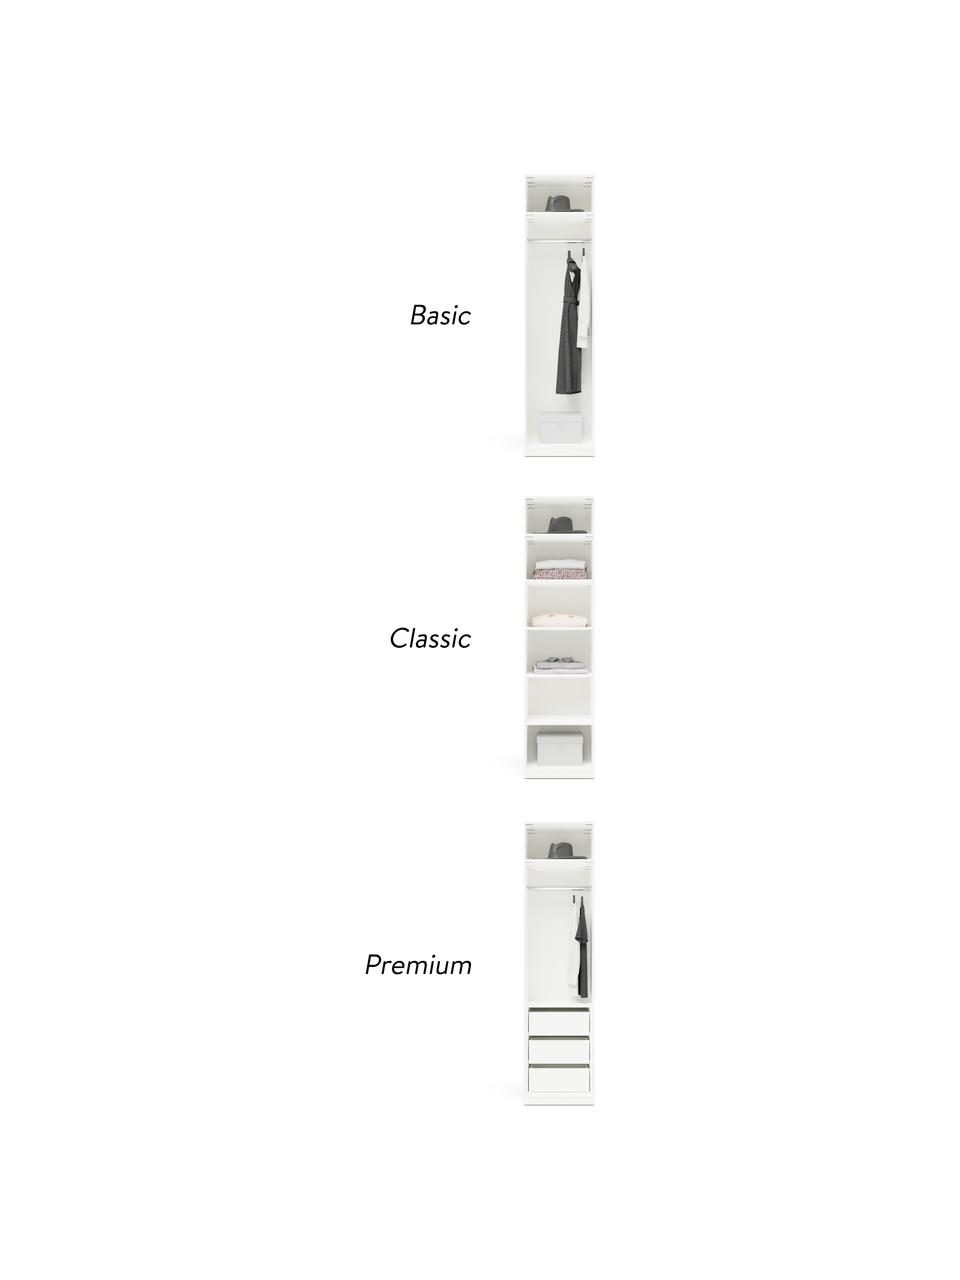 Szafa modułowa Simone, 1-drzwiowa, różne warianty, Korpus: płyta wiórowa pokryta mel, Beżowy, W 200 cm, Basic